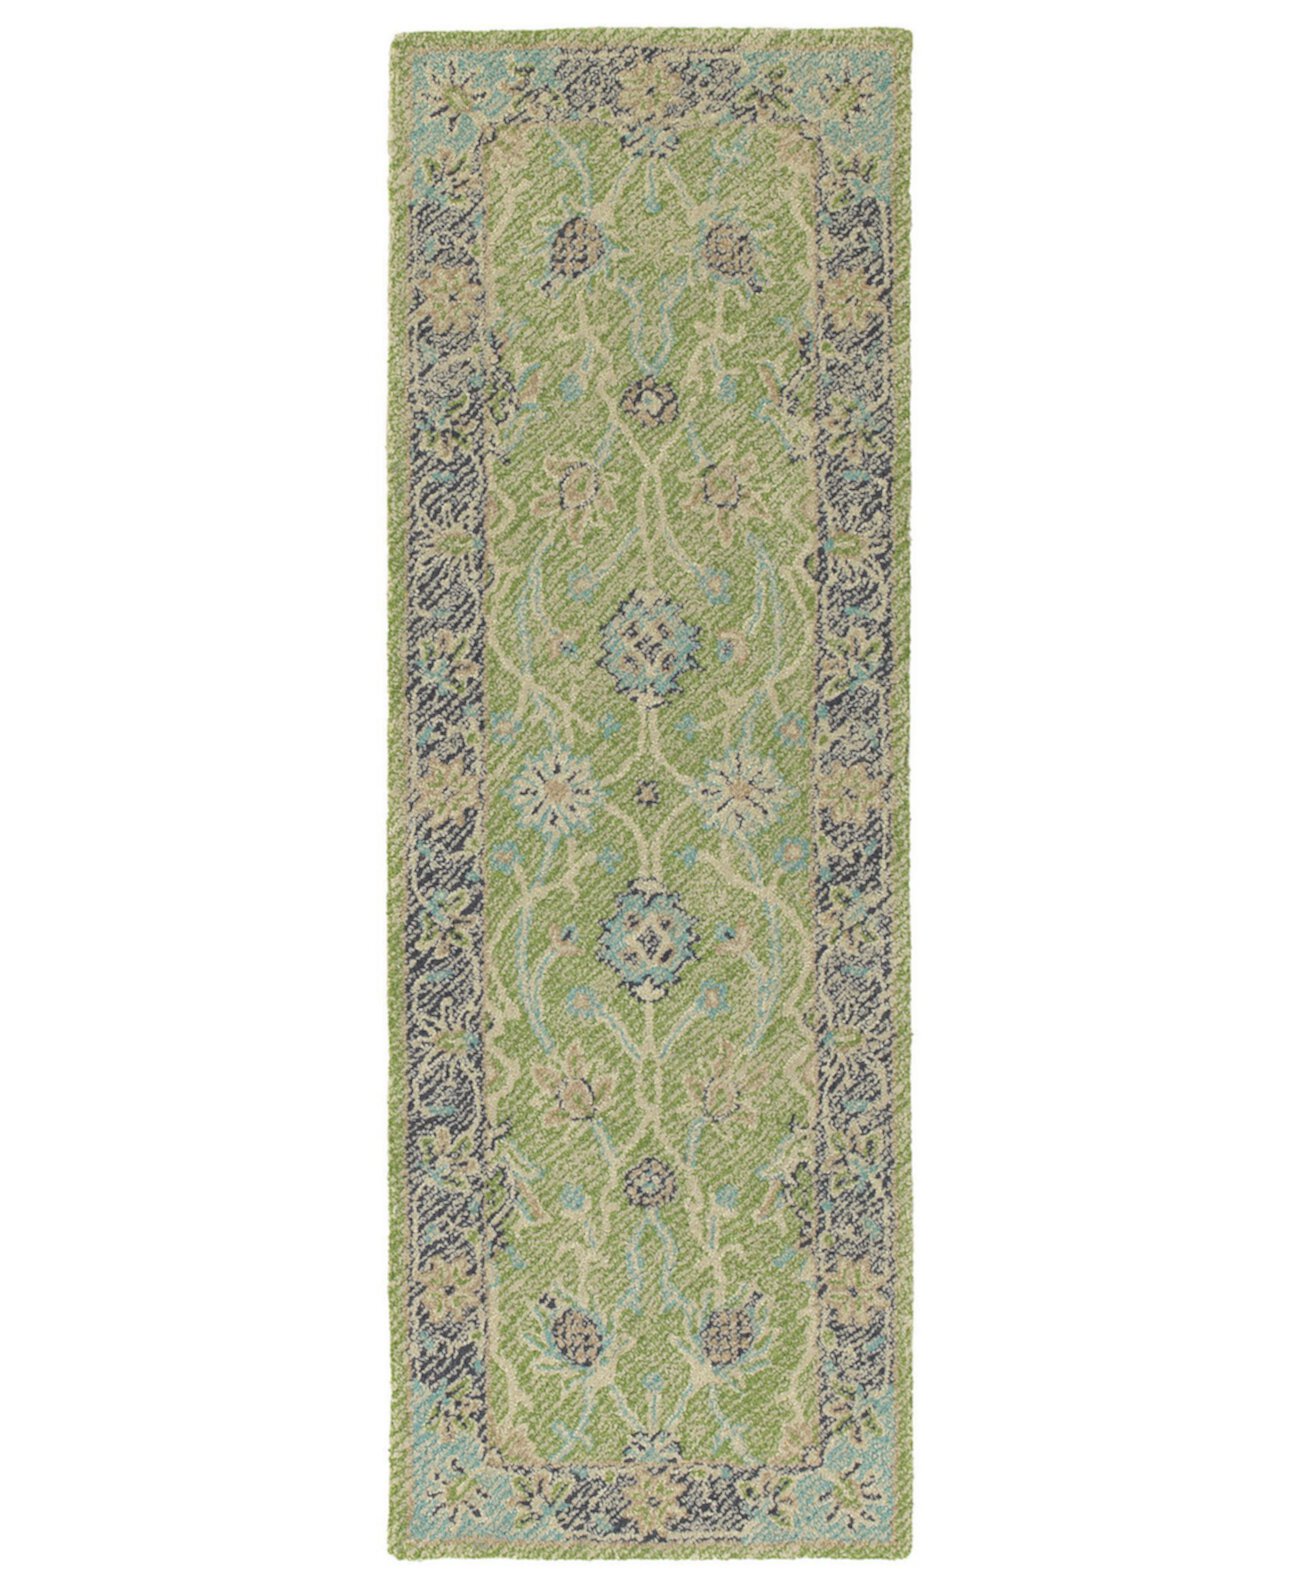 Потертый коврик WTR08-96 лаймово-зеленый, 2 x 6 футов, коврик для беговой дорожки Kaleen